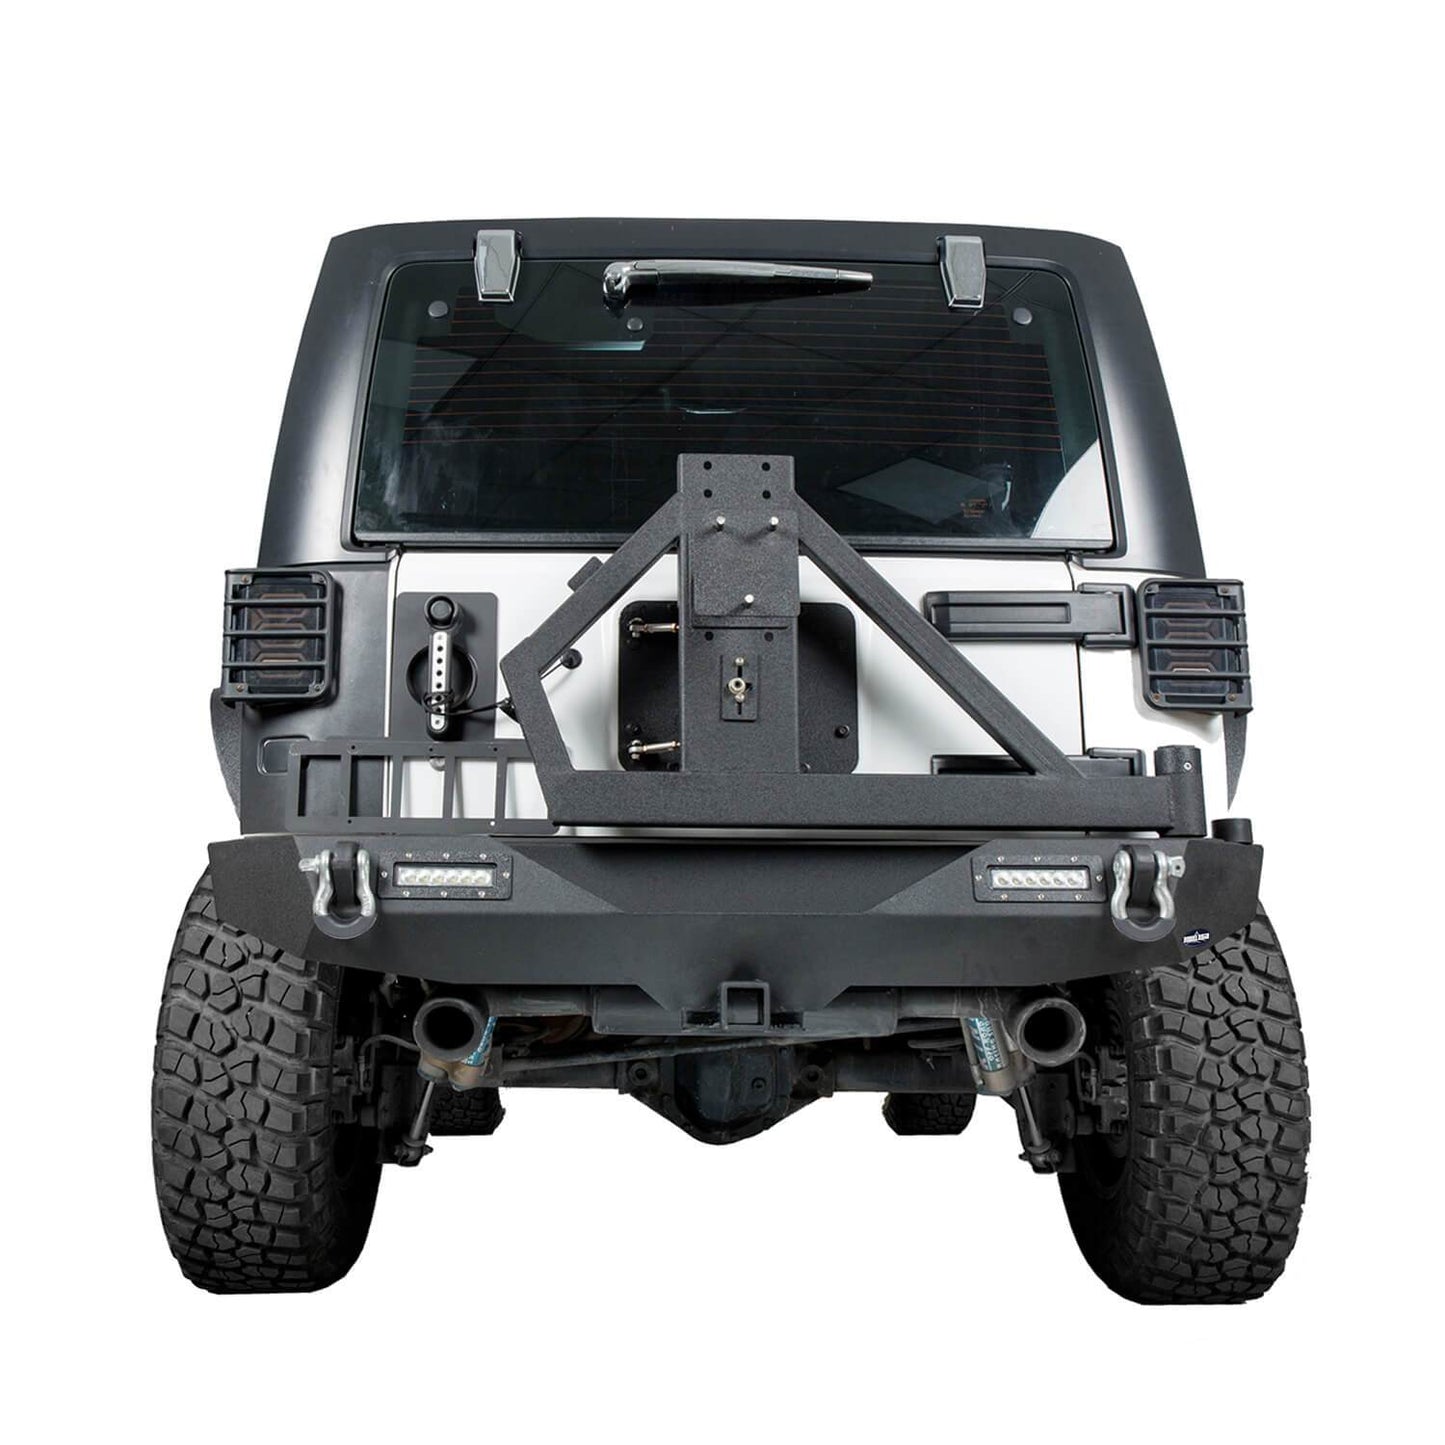 Full width Front Bumper & Rear Bumper(07-18 Jeep Wrangler JK) - ultralisk4x4